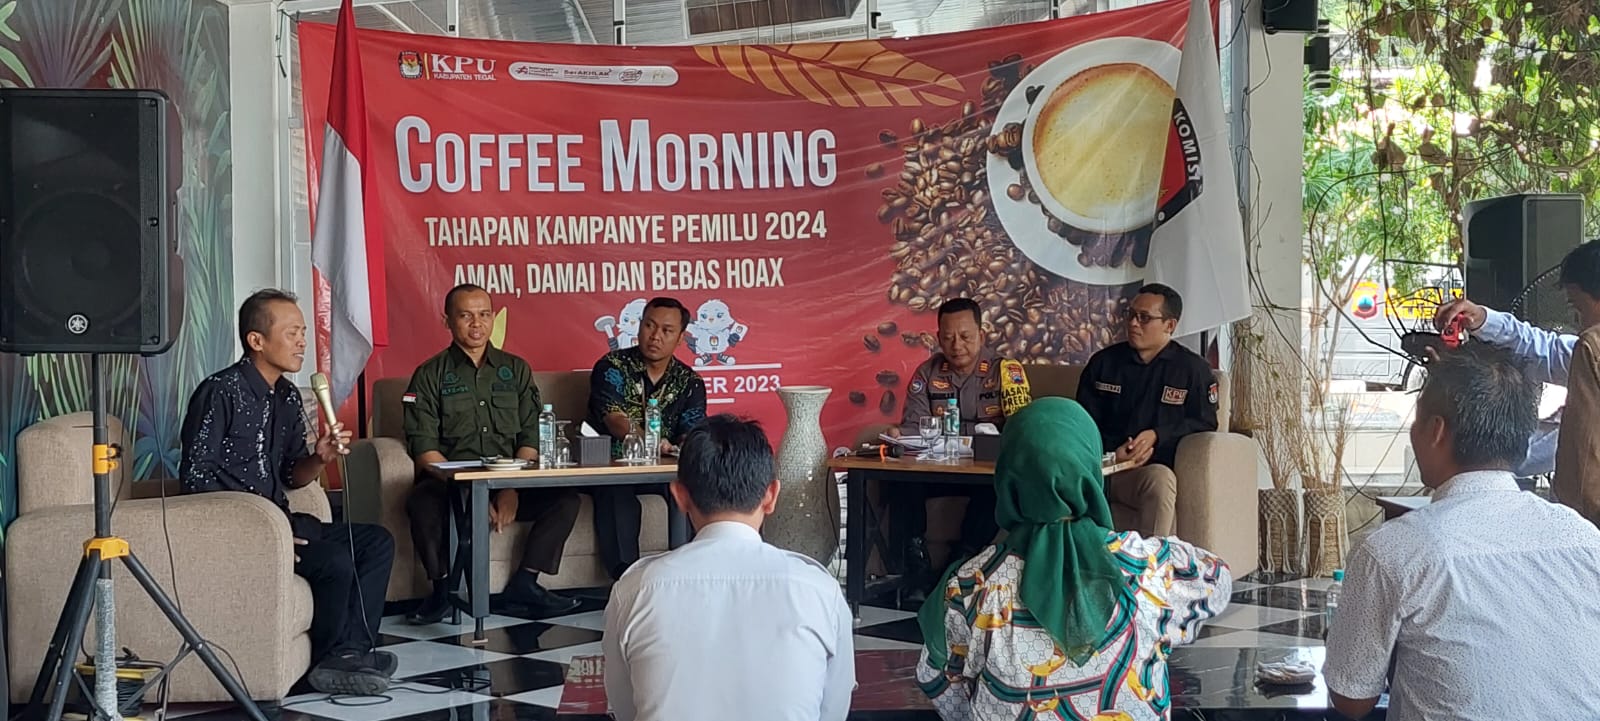 Sosialisasikan Tahapan Pemilu dalam Coffe Morning, KPU Ungkap Peran Media  